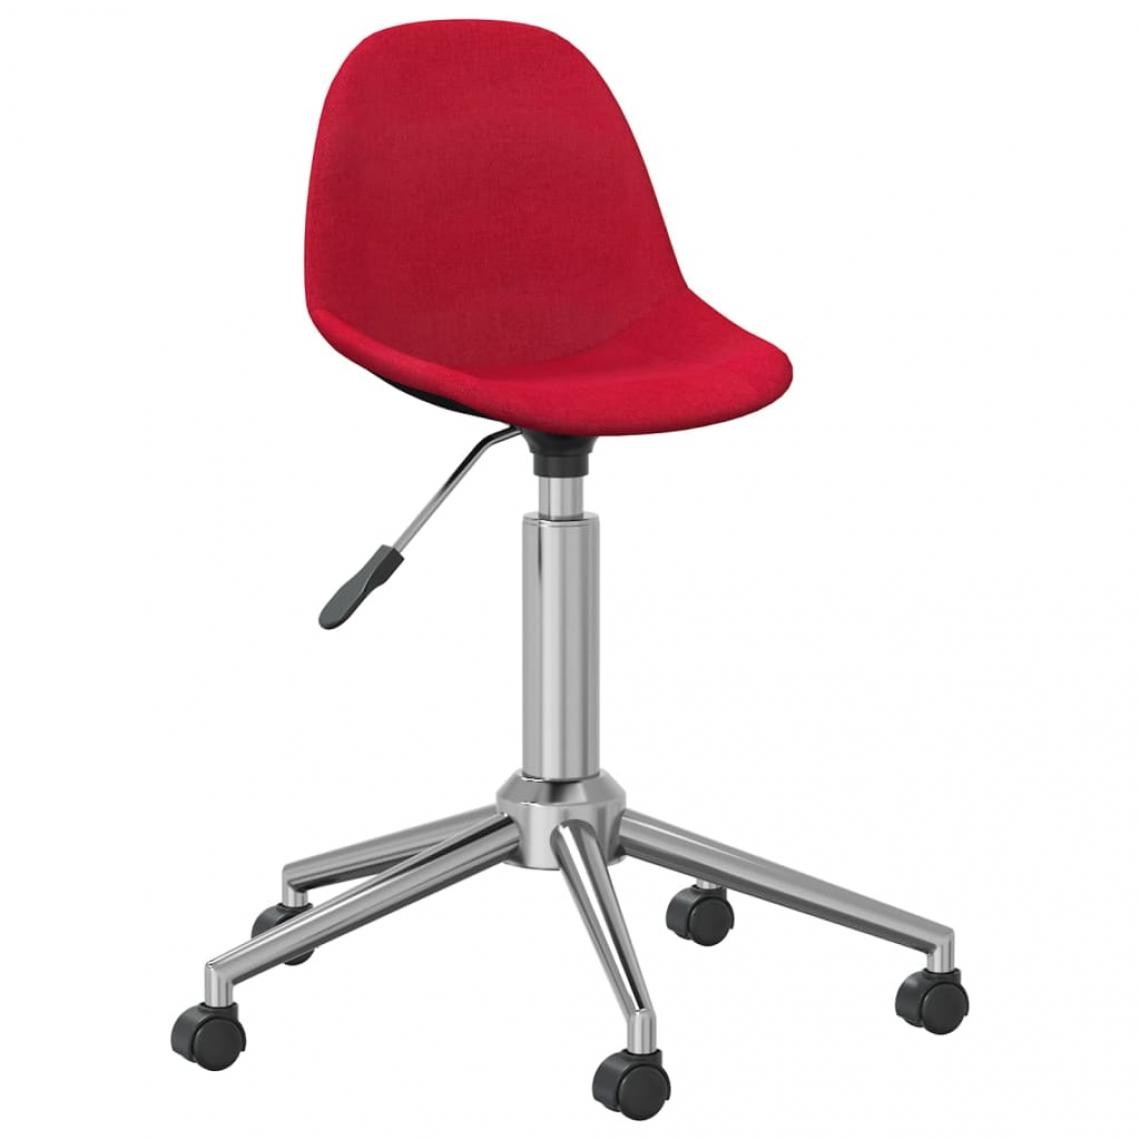 Vidaxl - vidaXL Chaise pivotante de bureau Rouge bordeaux Tissu - Bureaux